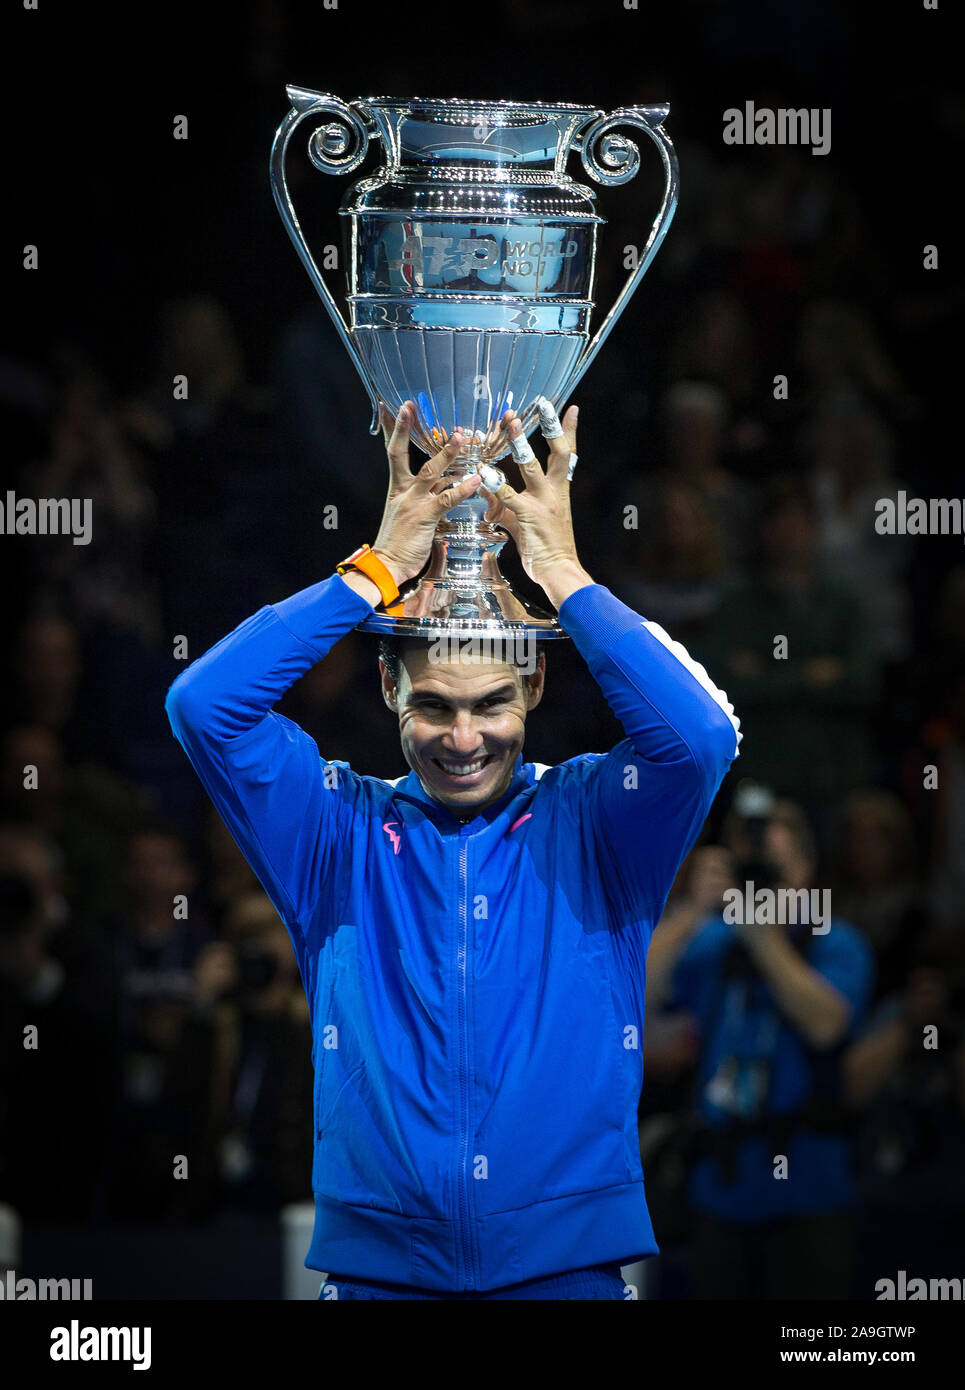 Londra, Regno Unito. Xv Nov, 2019. Rafa "" Rafael Nadal (Spagna) solleva il numero uno del mondo trofeo durante la Nitto ATP Finals Tennis Londra giorno 6 presso l'O2, Londra, Inghilterra il 15 novembre 2019. Foto di Andy Rowland. Credito: prime immagini multimediali/Alamy Live News Foto Stock